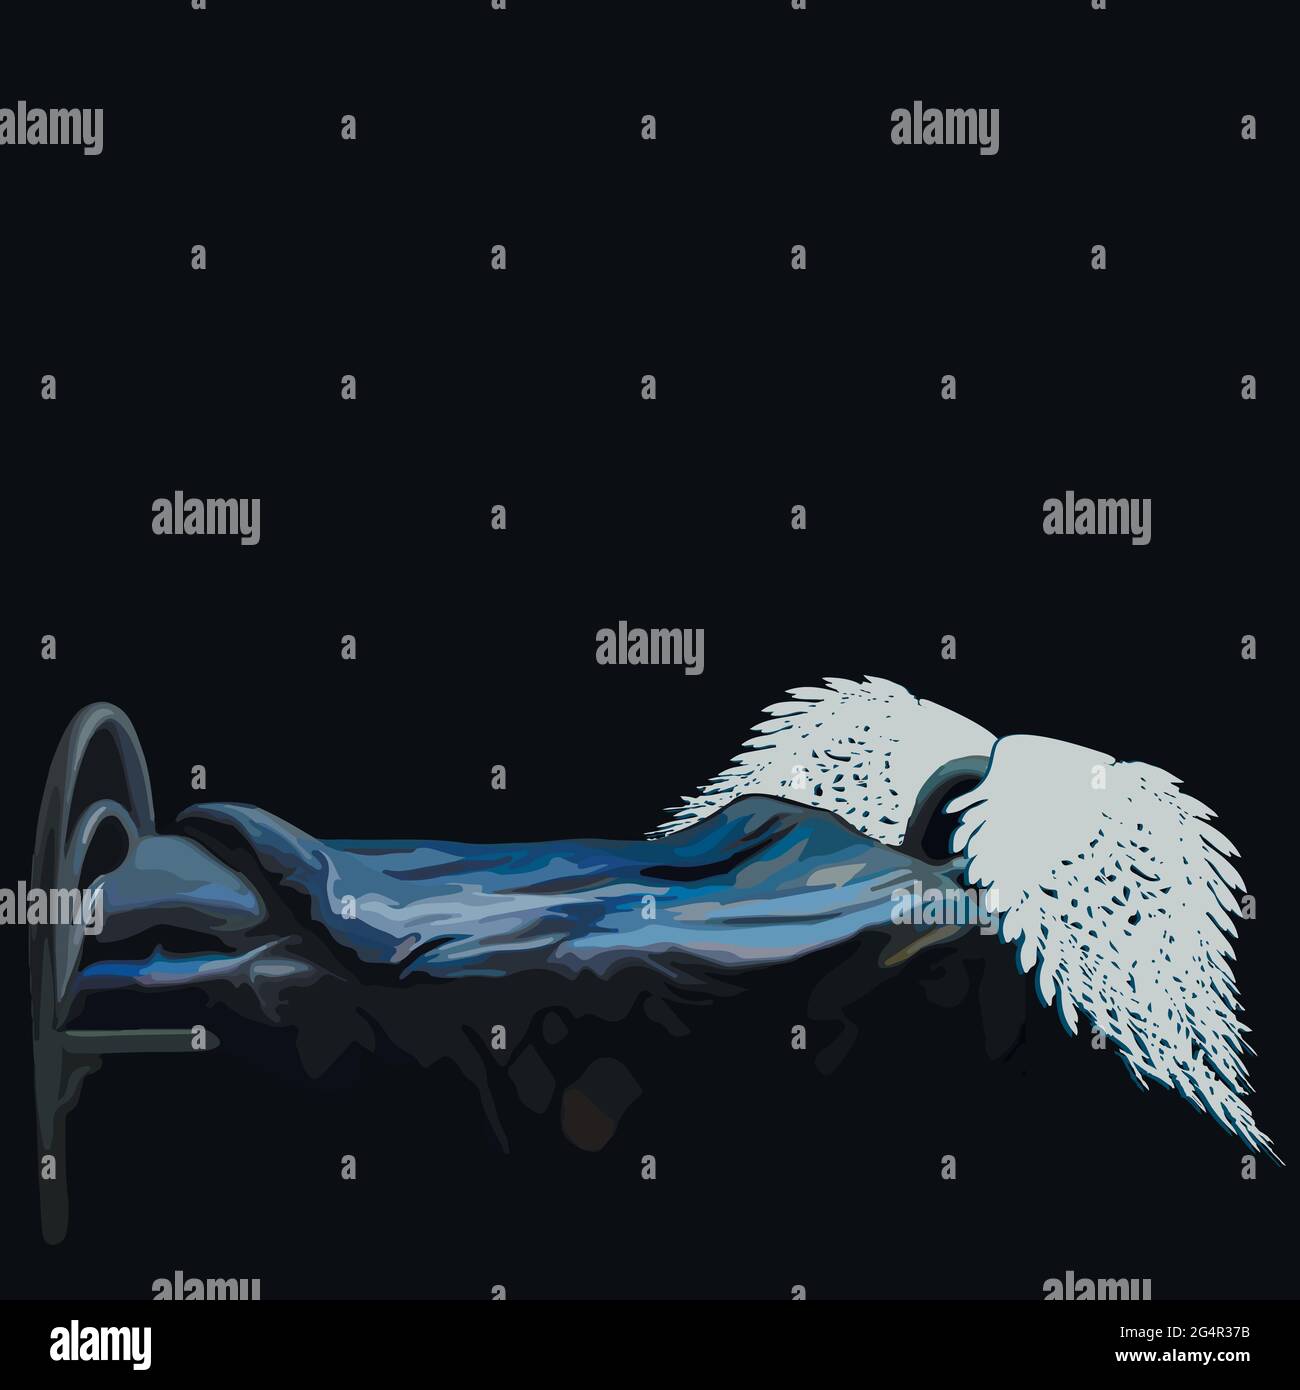 Vektor-Illustration auf schwarzem Hintergrund - ein dunkles Zimmer, ein Schlafzimmer - ein Bett mit blauer Bettwäsche, auf dem Bett sind die Flügel eines Engels. Stock Vektor